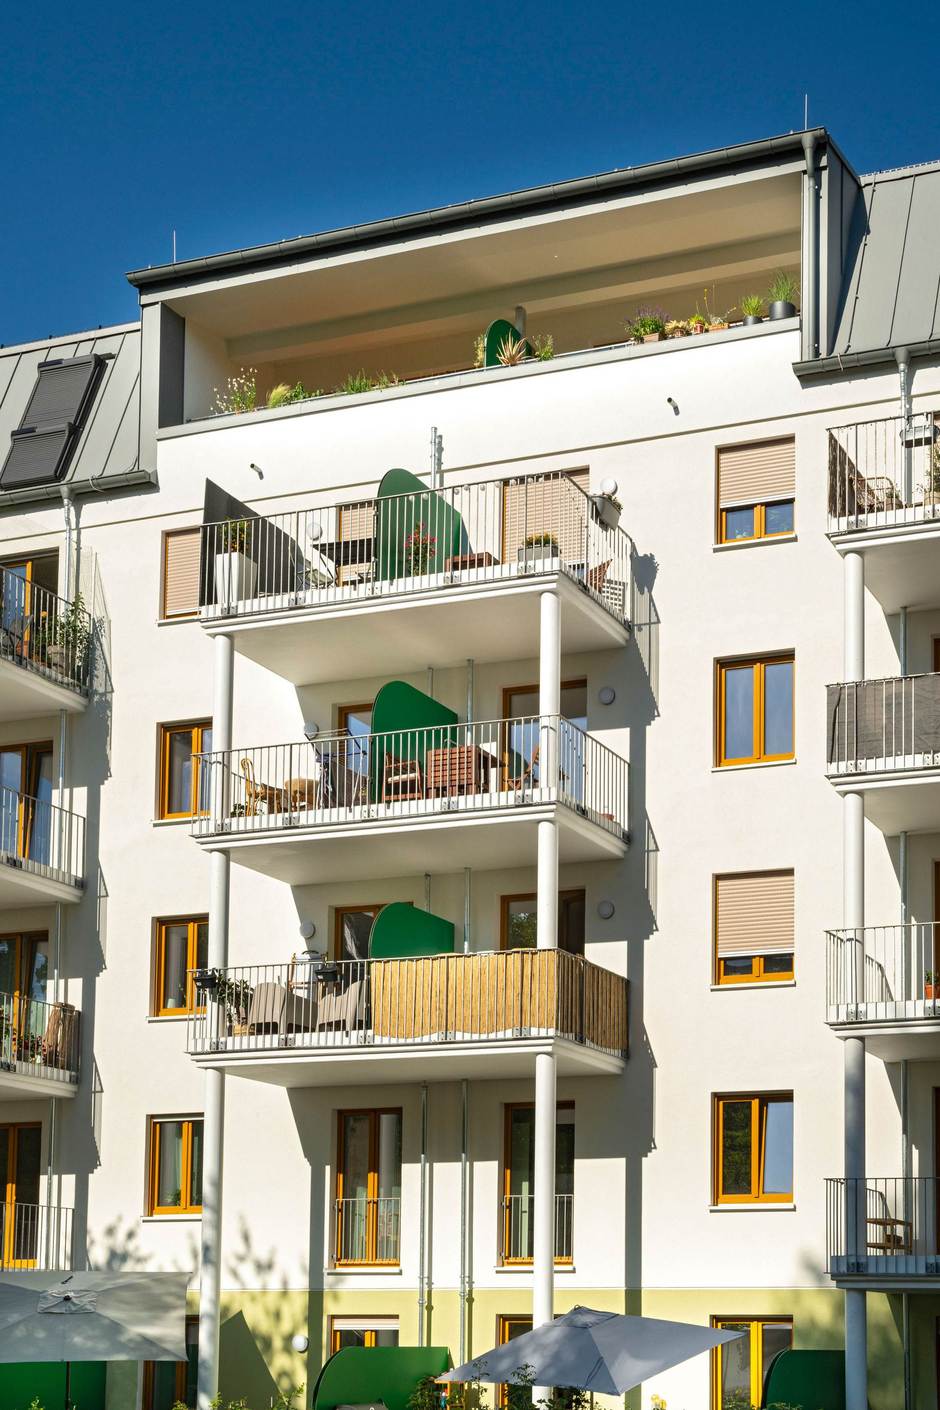 Zu dem Neubaukomplex in der Freiligrathstraße gehören insgesamt 54 Wohnungen mit 4.600 qm Wohnfläche. Foto: Barbara Staubach